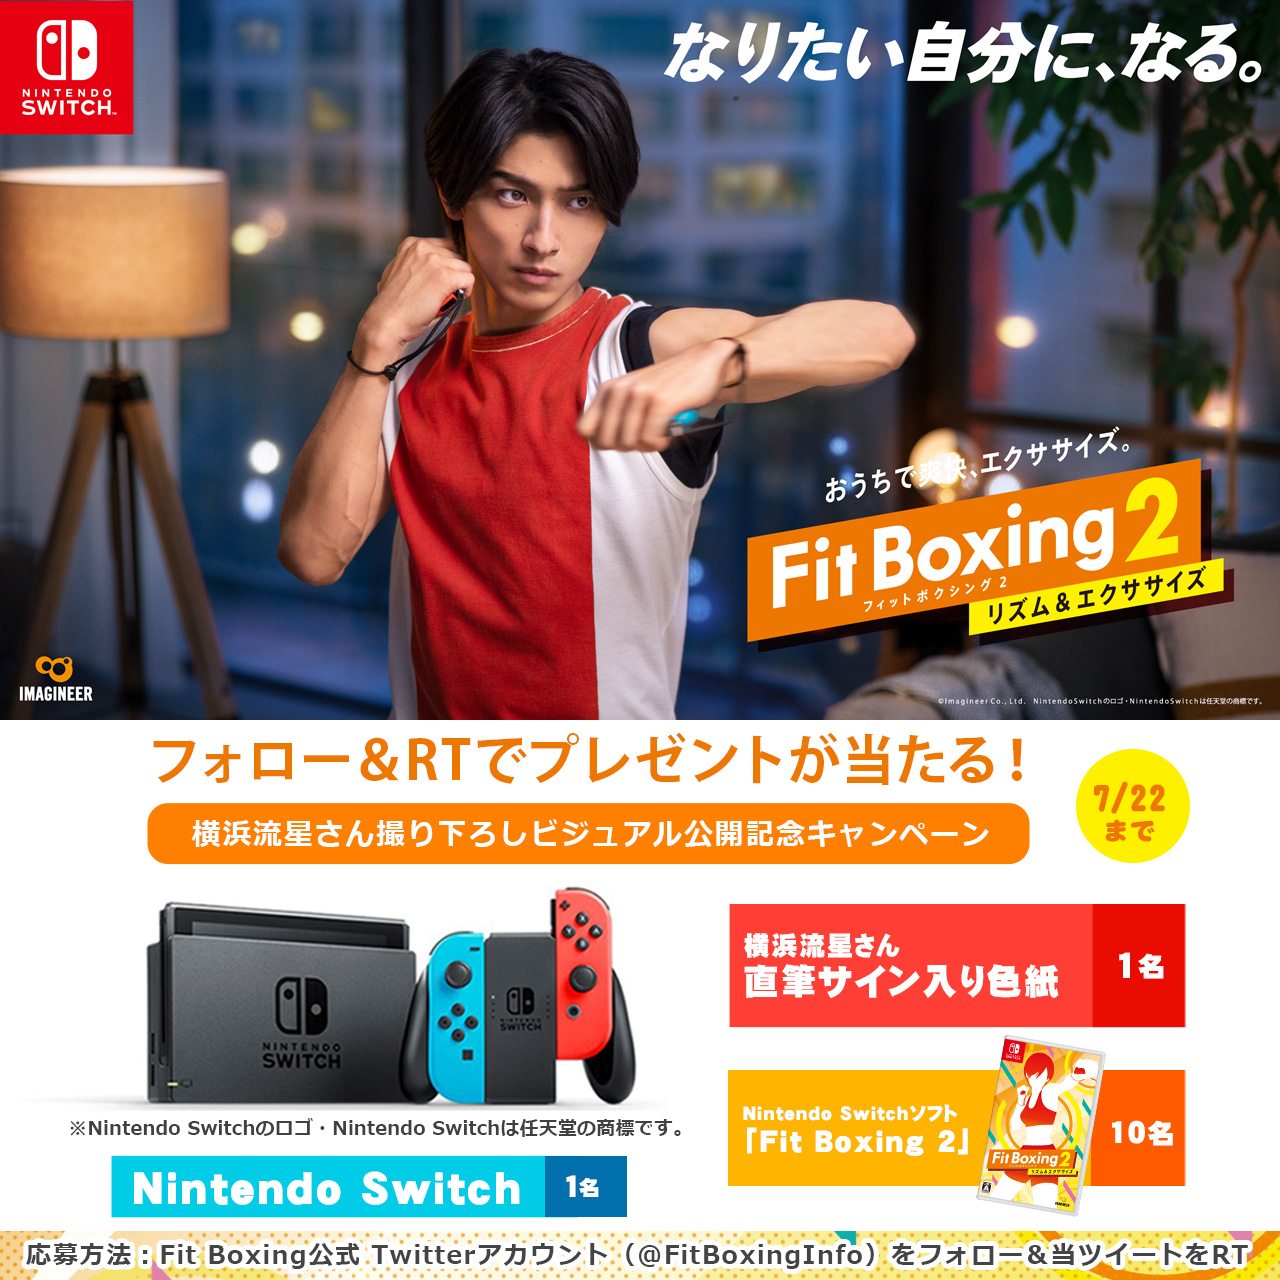 Nintendo Switch 本体、横浜流星さん直筆サイン入り色紙、「Fit Boxing 2」などが当たるTwitterキャンペーン